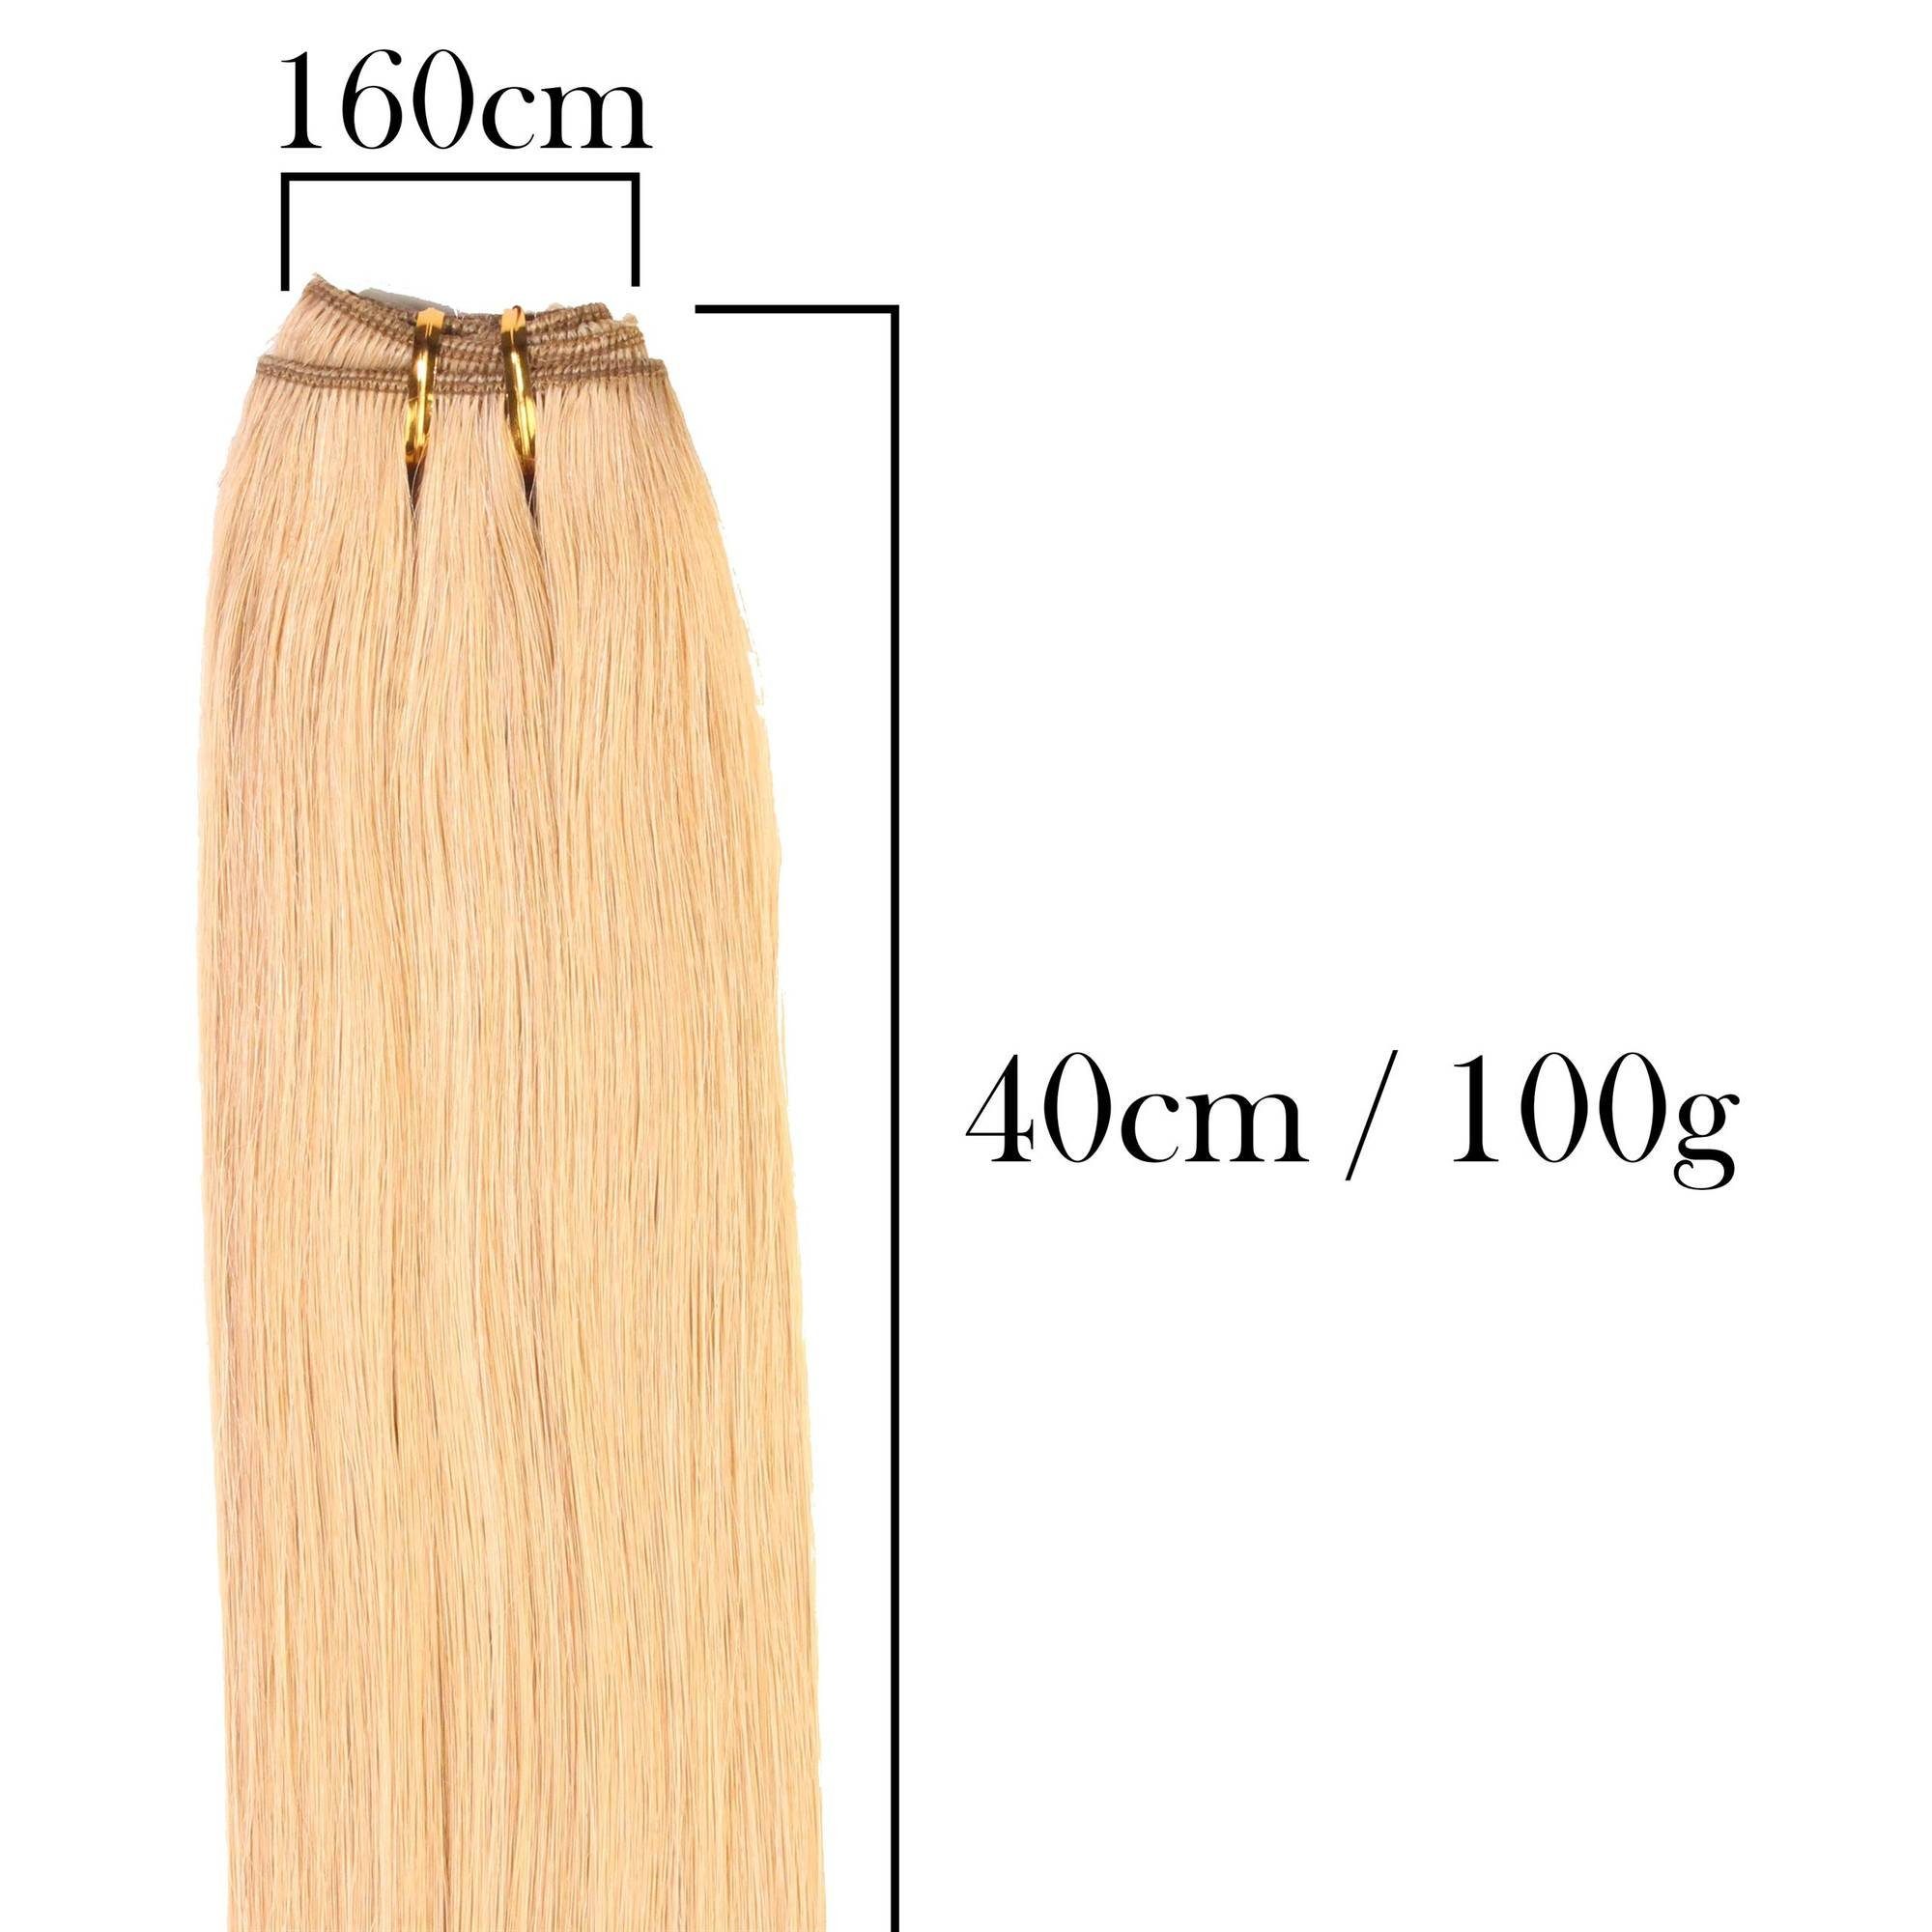 Echthaartresse #6/3 Gewellte Gold hair2heart 40cm Dunkelblond Echthaar-Extension